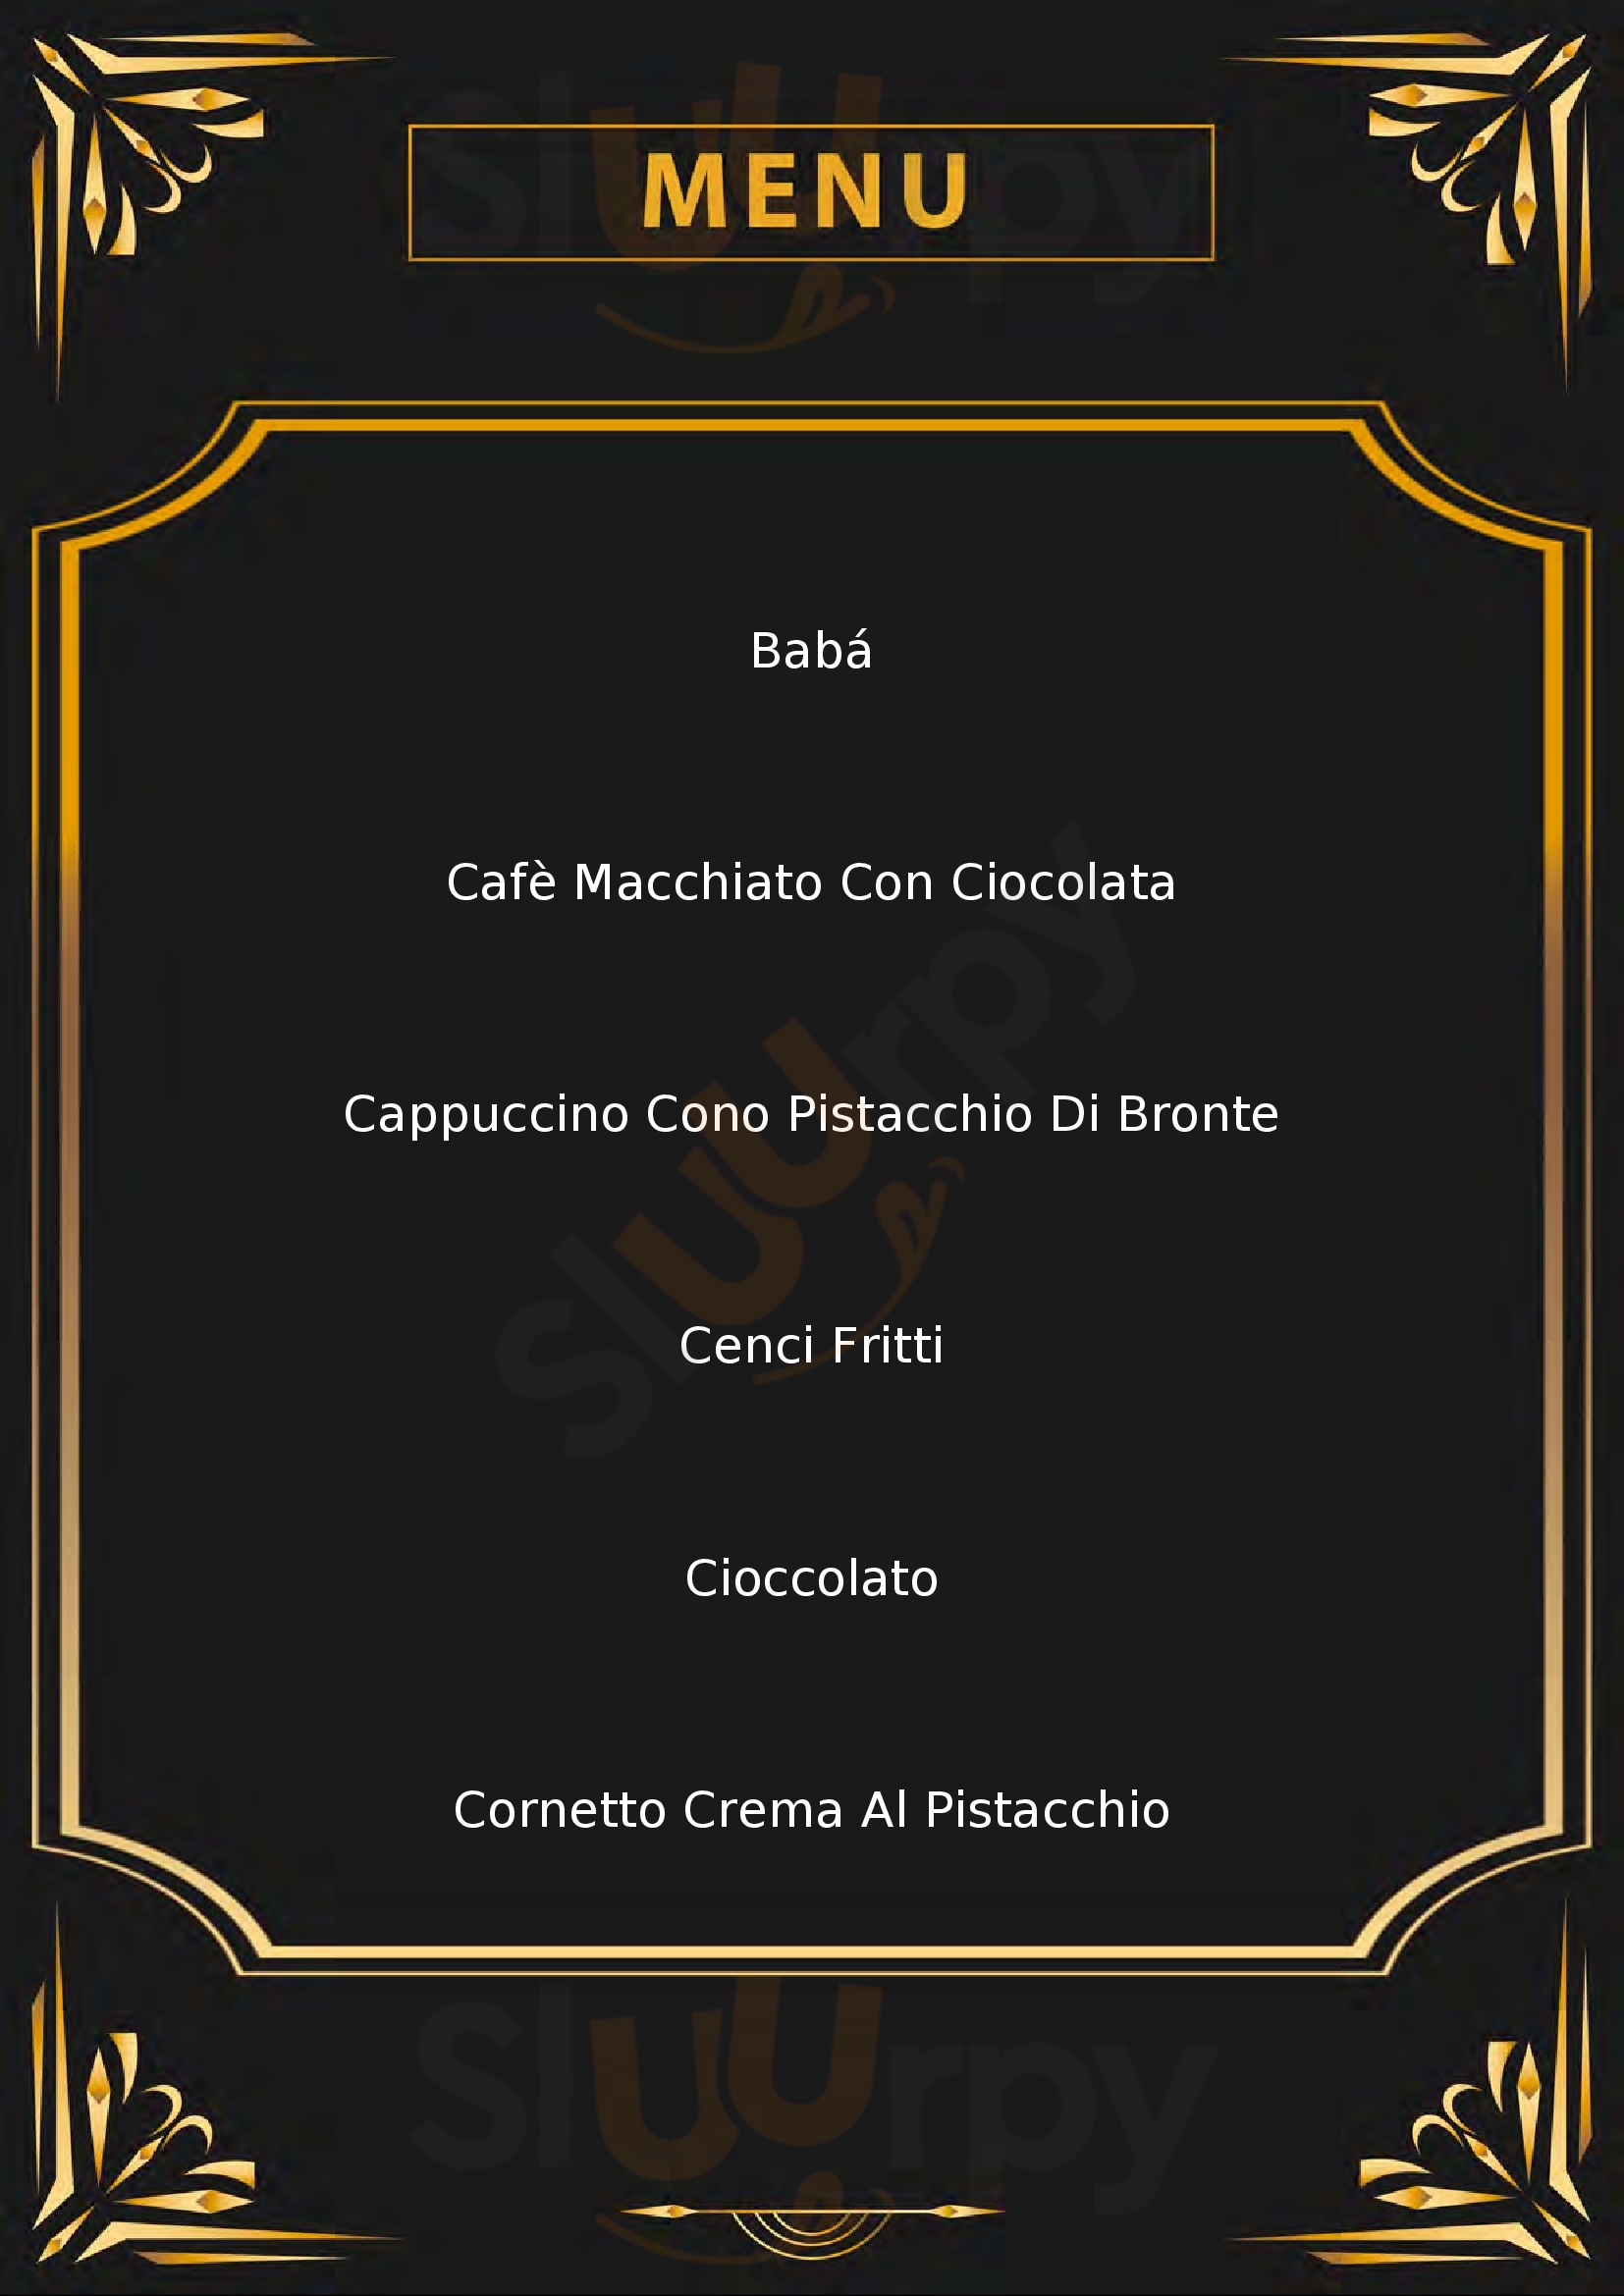 La Sfogliatella Bar Pasticceria Napoletana Montevarchi menù 1 pagina